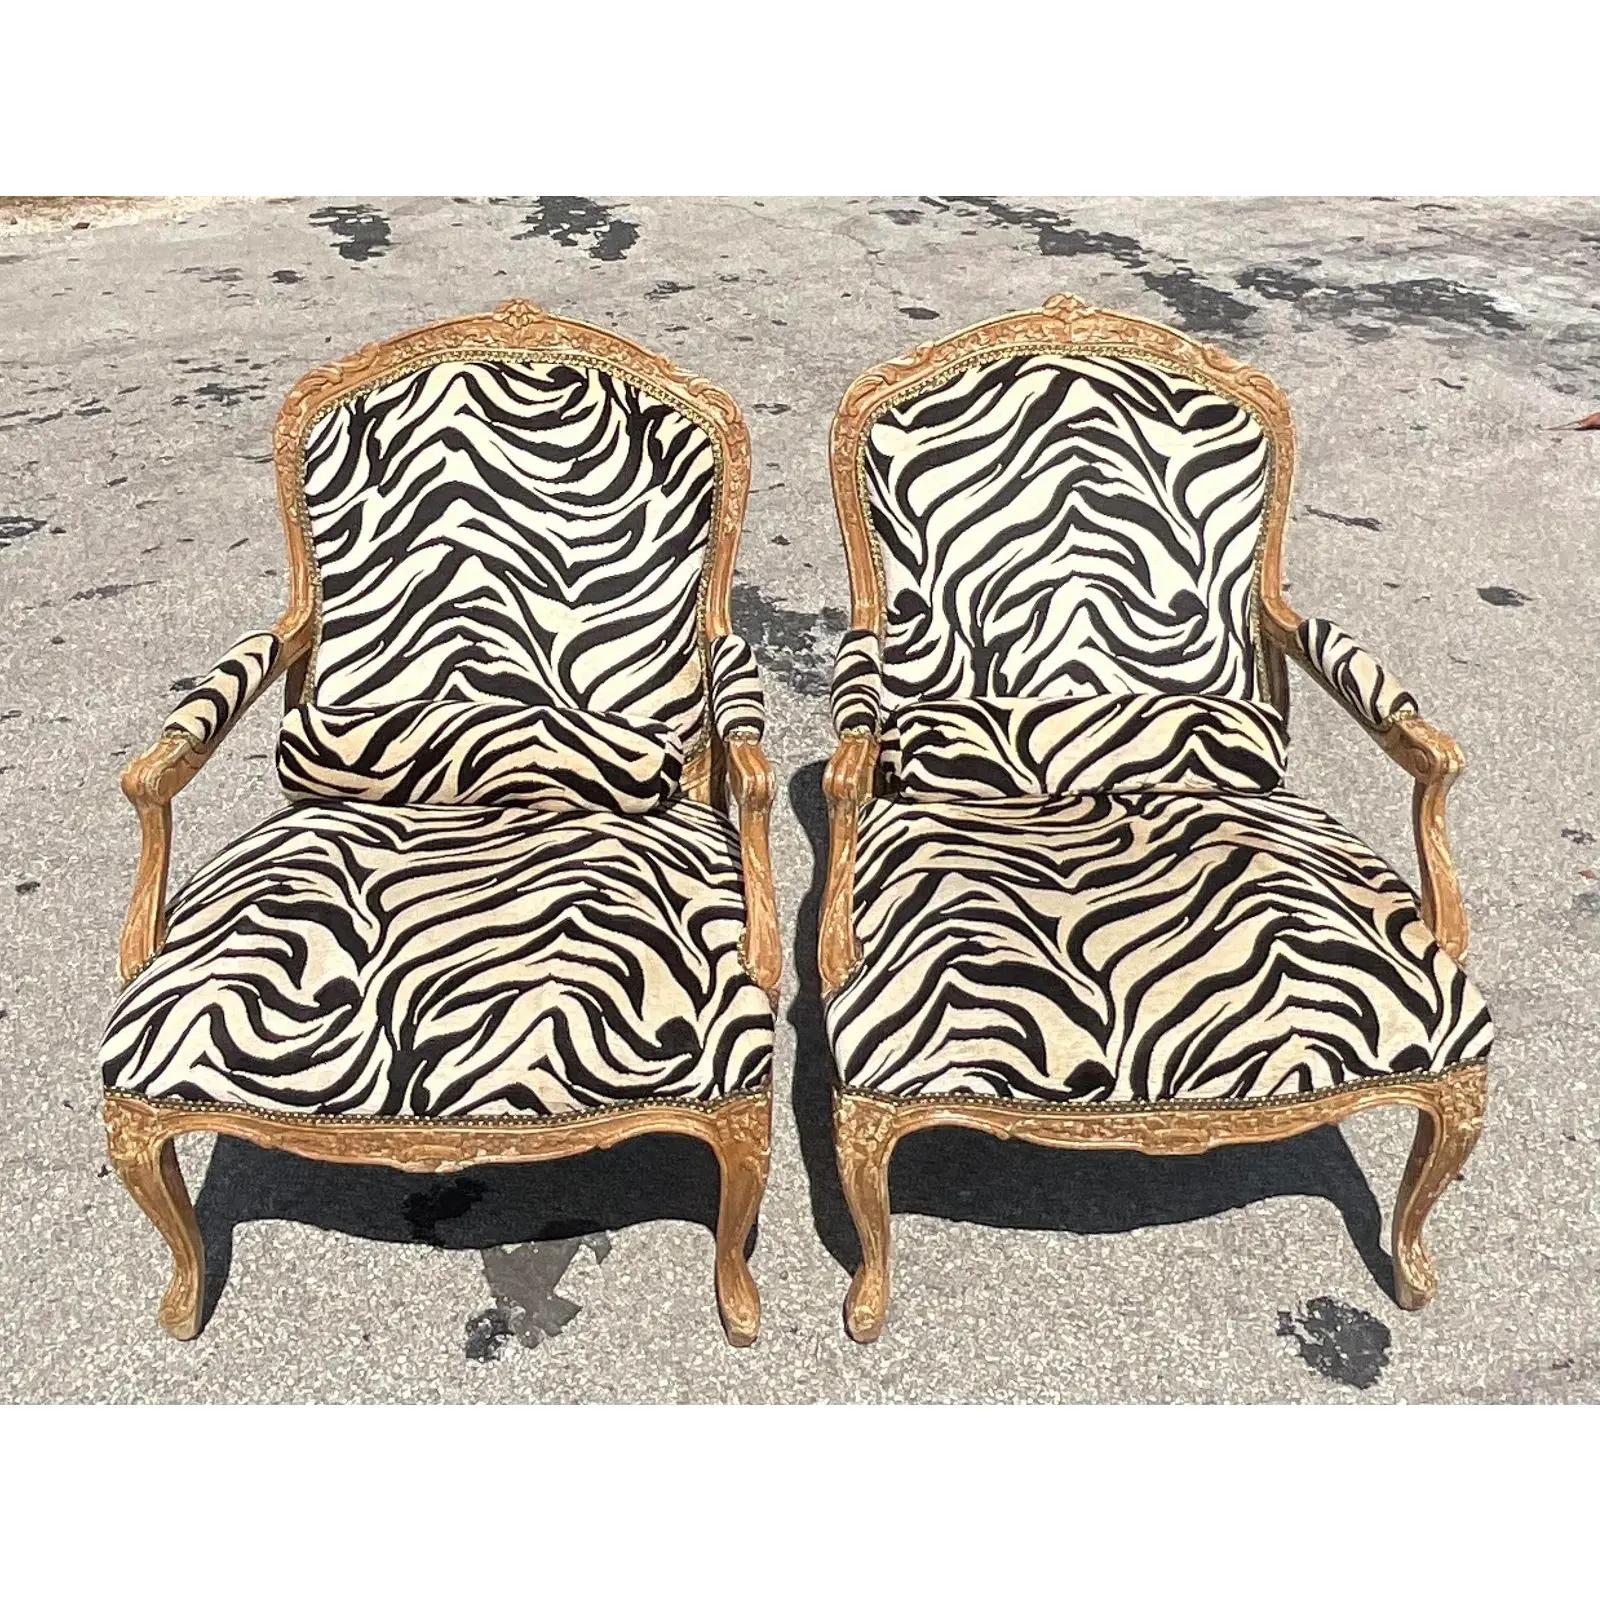 North American Vintage Regency Printed Zebra Bergere Chairs, a Pair